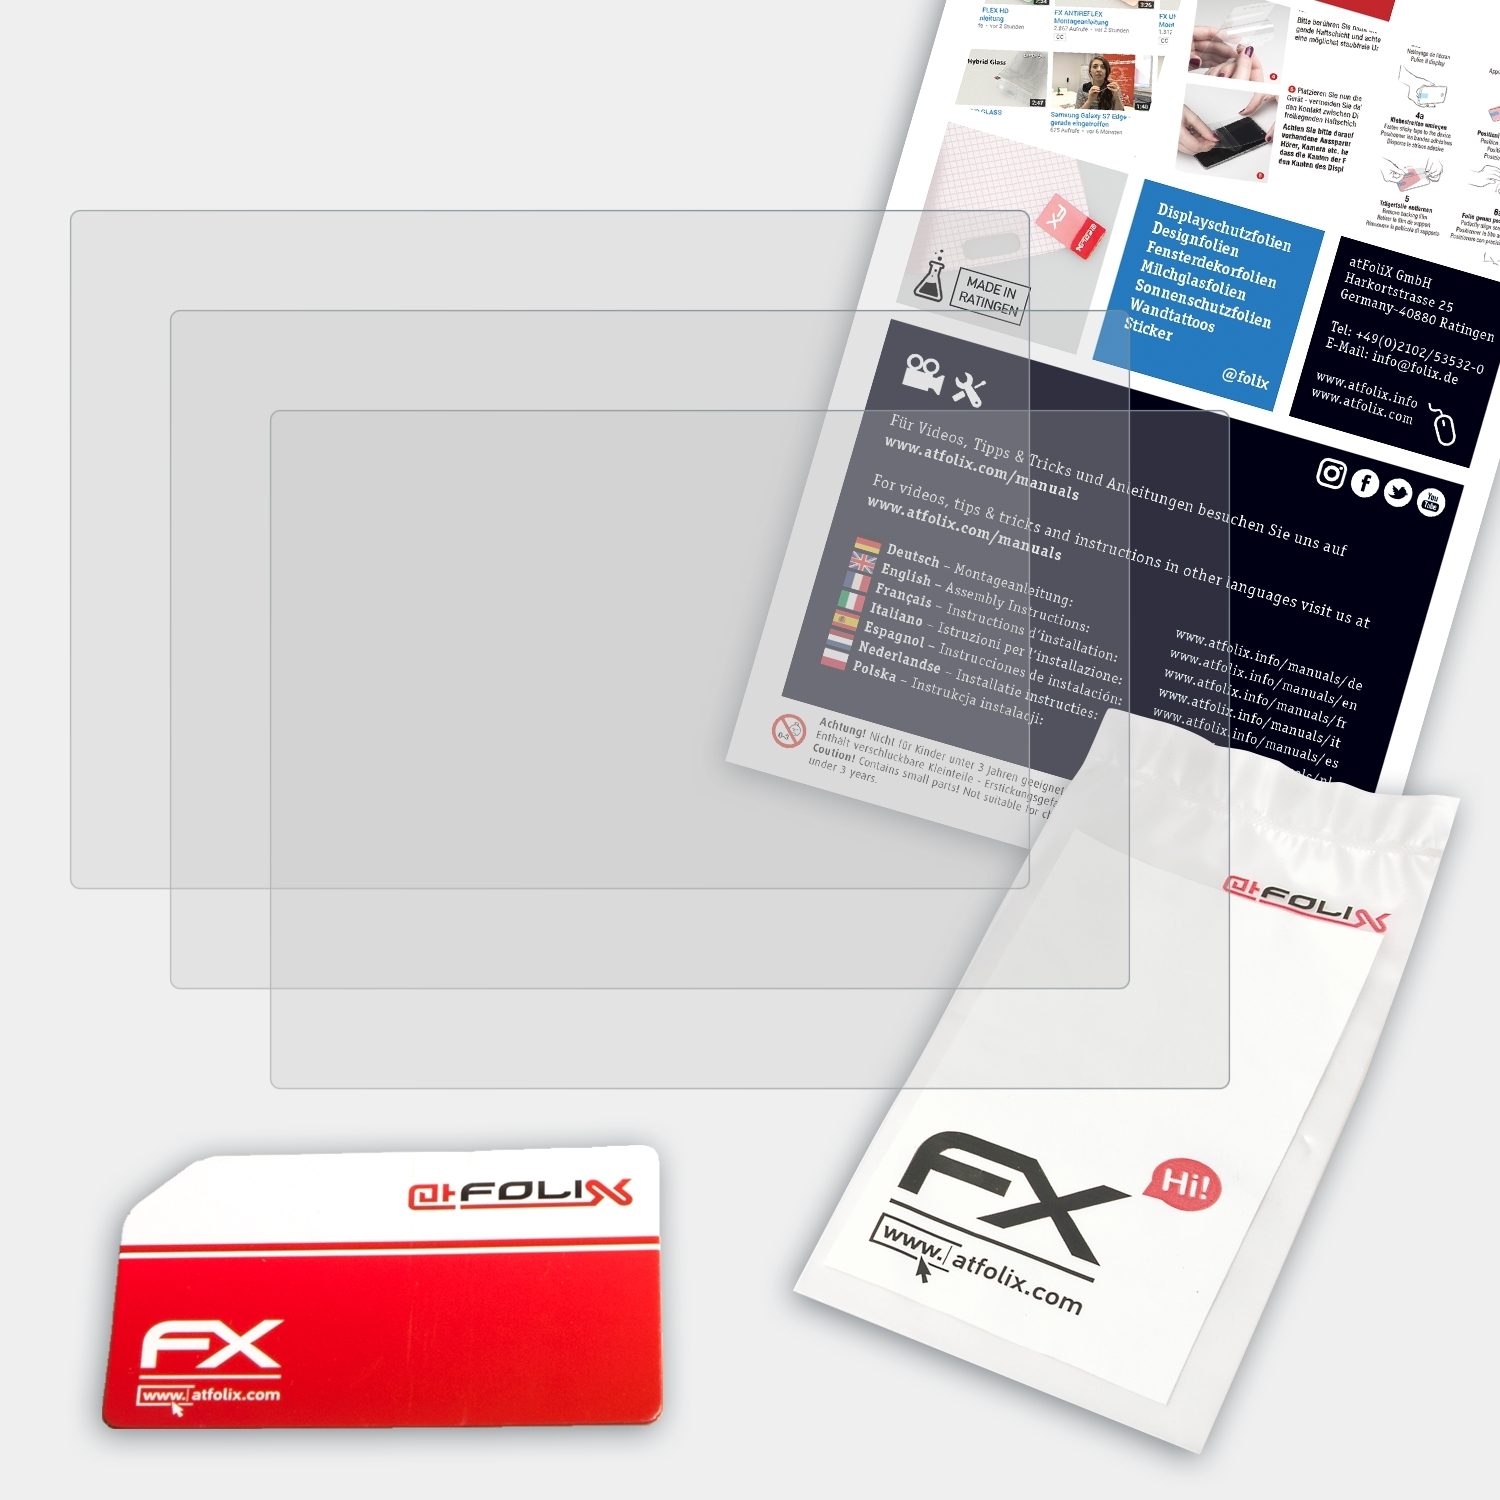 ATFOLIX 3x FX-Antireflex Fujifilm Displayschutz(für XQ2)